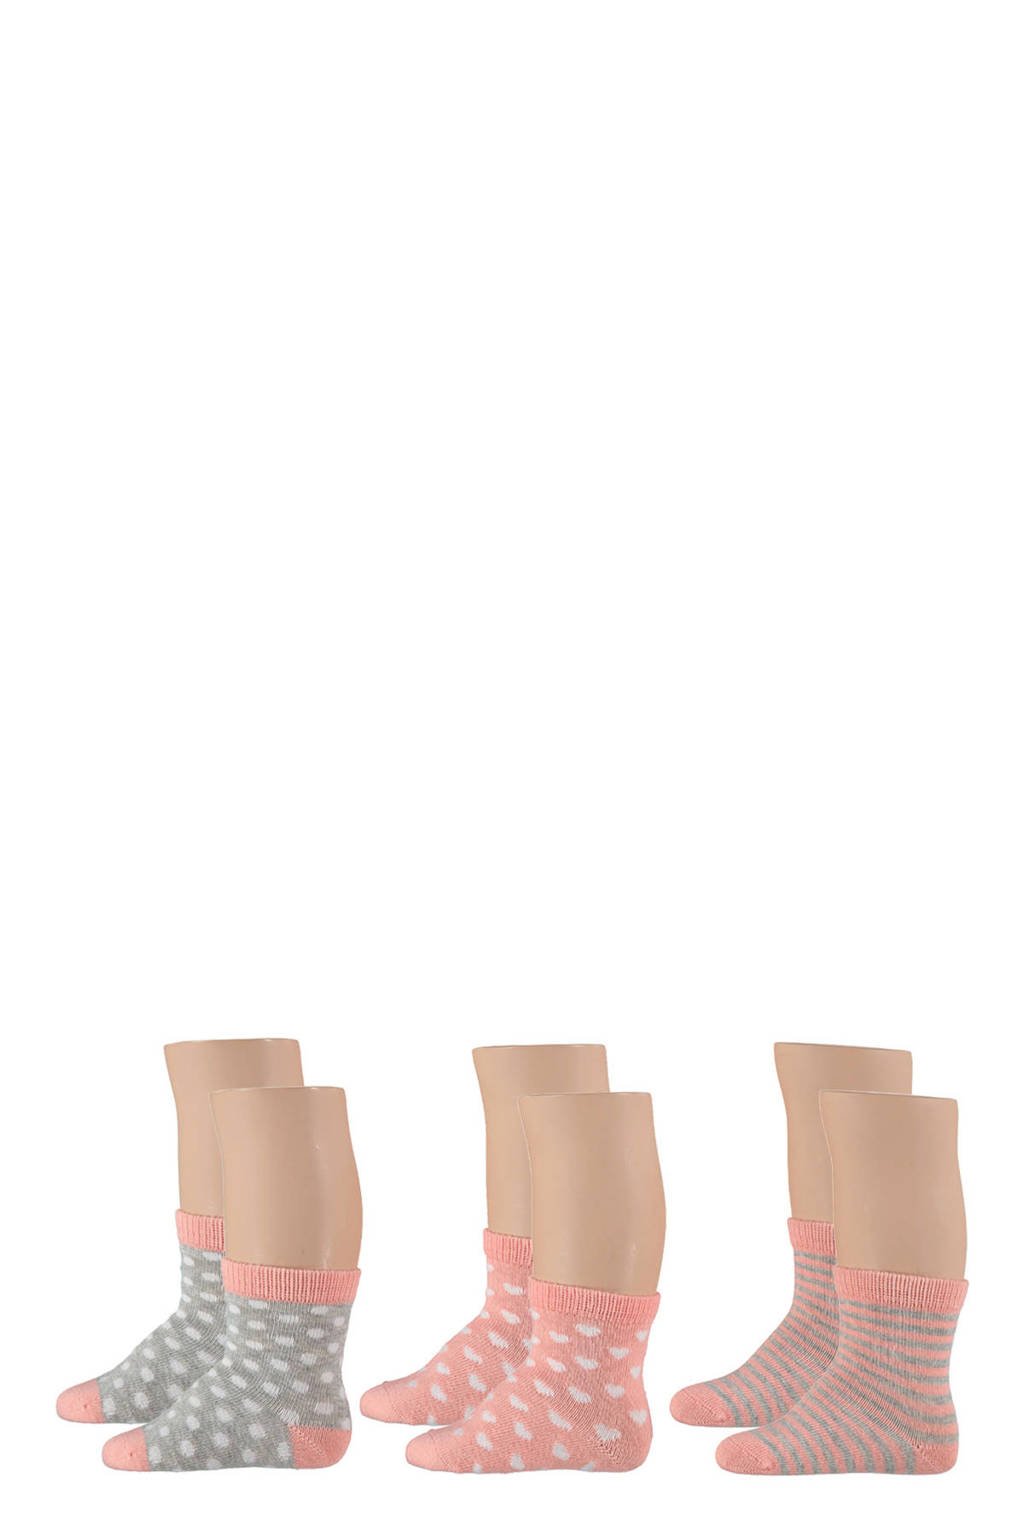 Apollo sokken - set van 6 roze/grijs